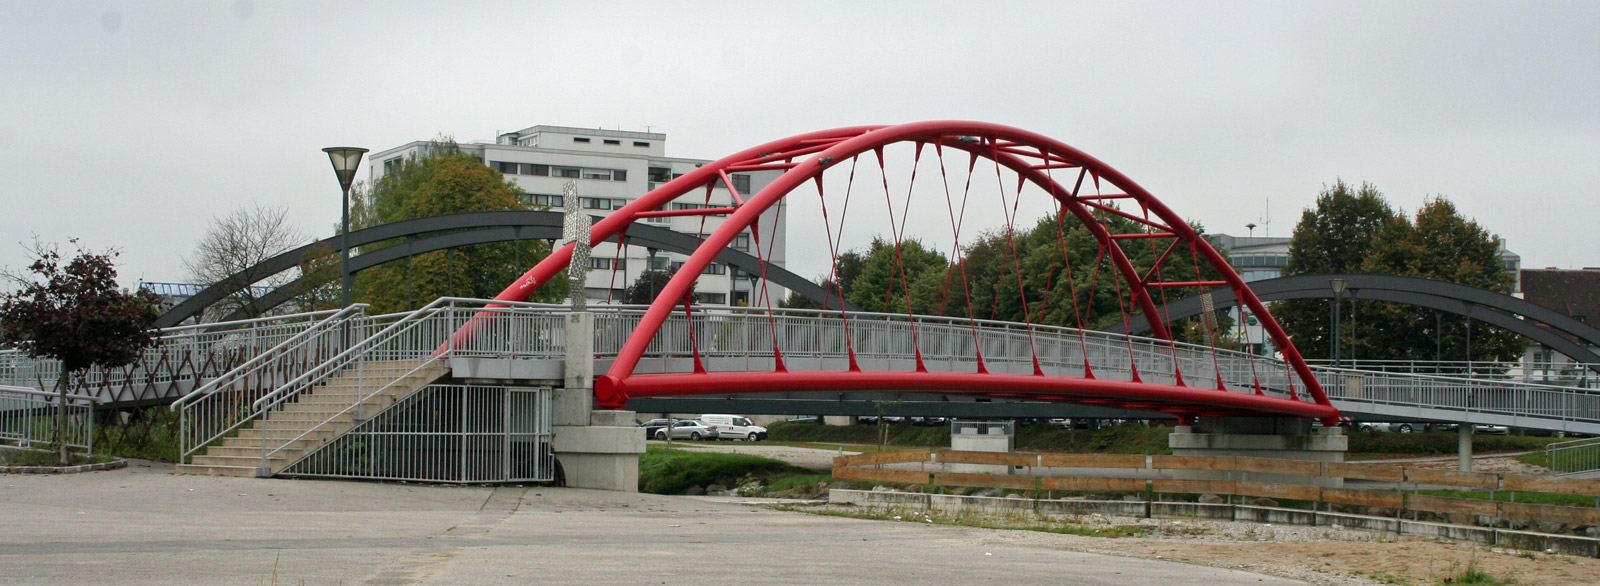 Fußgängerbrücke in Wieselburg